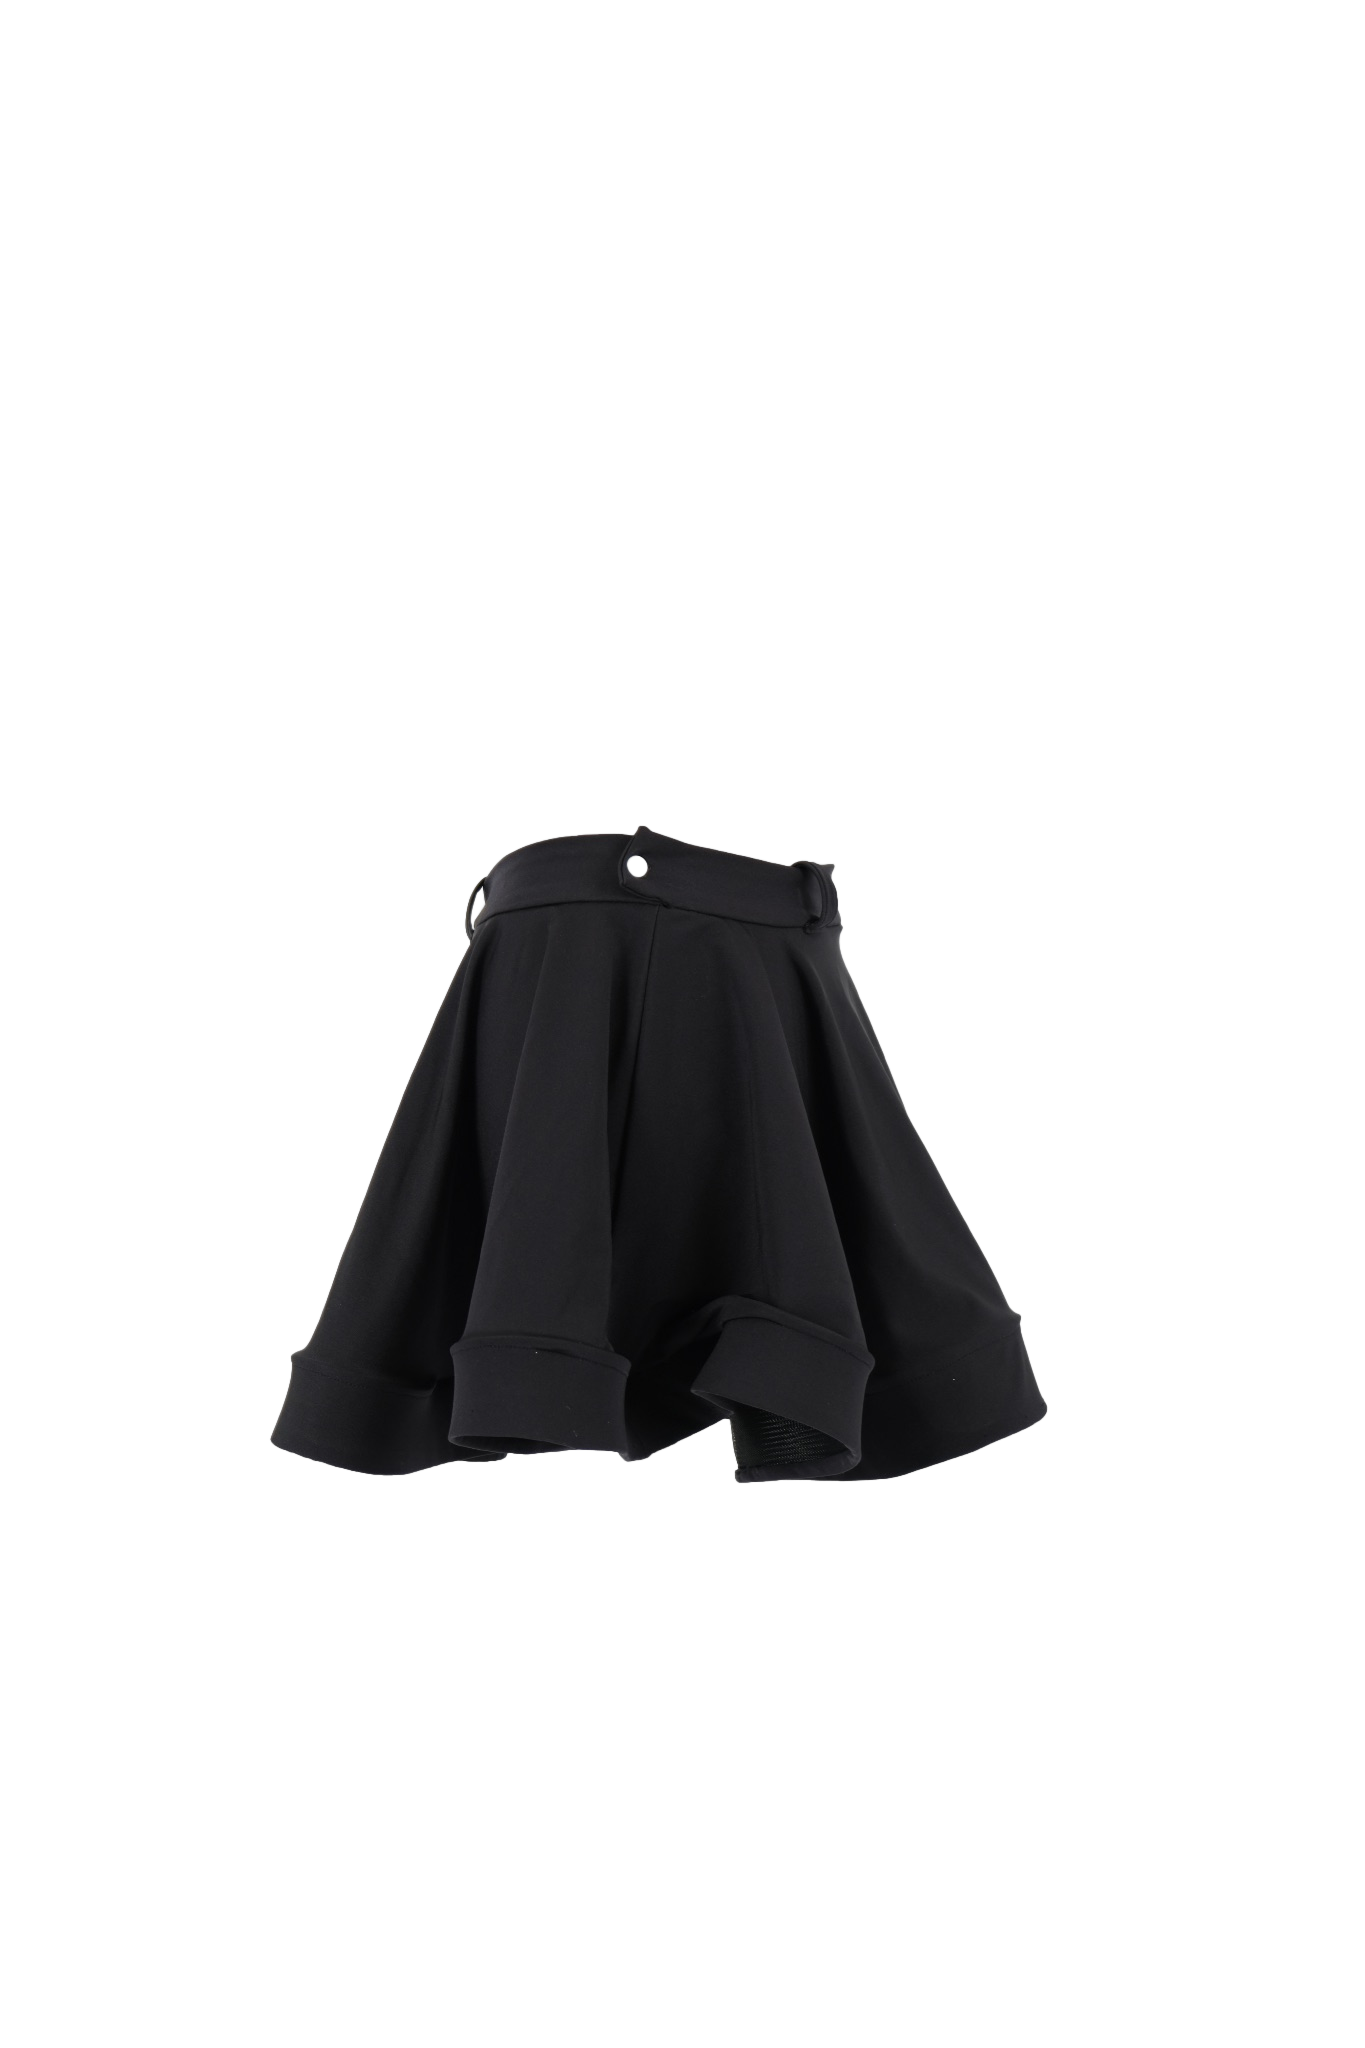 Widow Skirt